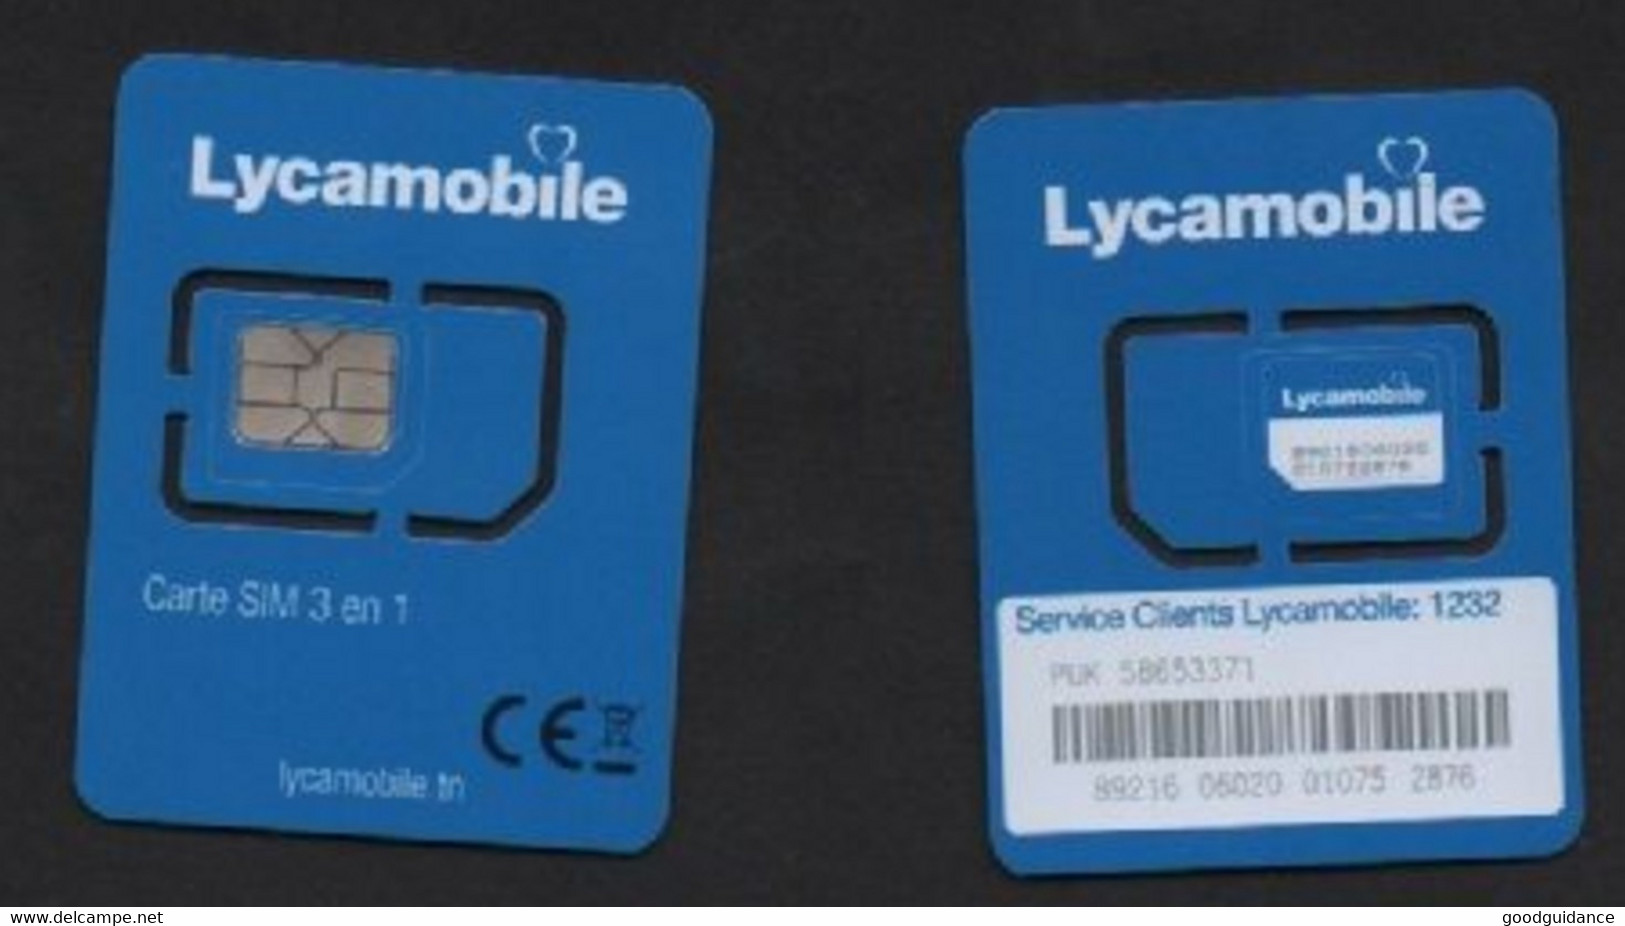 Tunisia- Tunisie - Lycamobile - Mini/Micro/Nano SIM Card 4G - Not Used - Tunisie